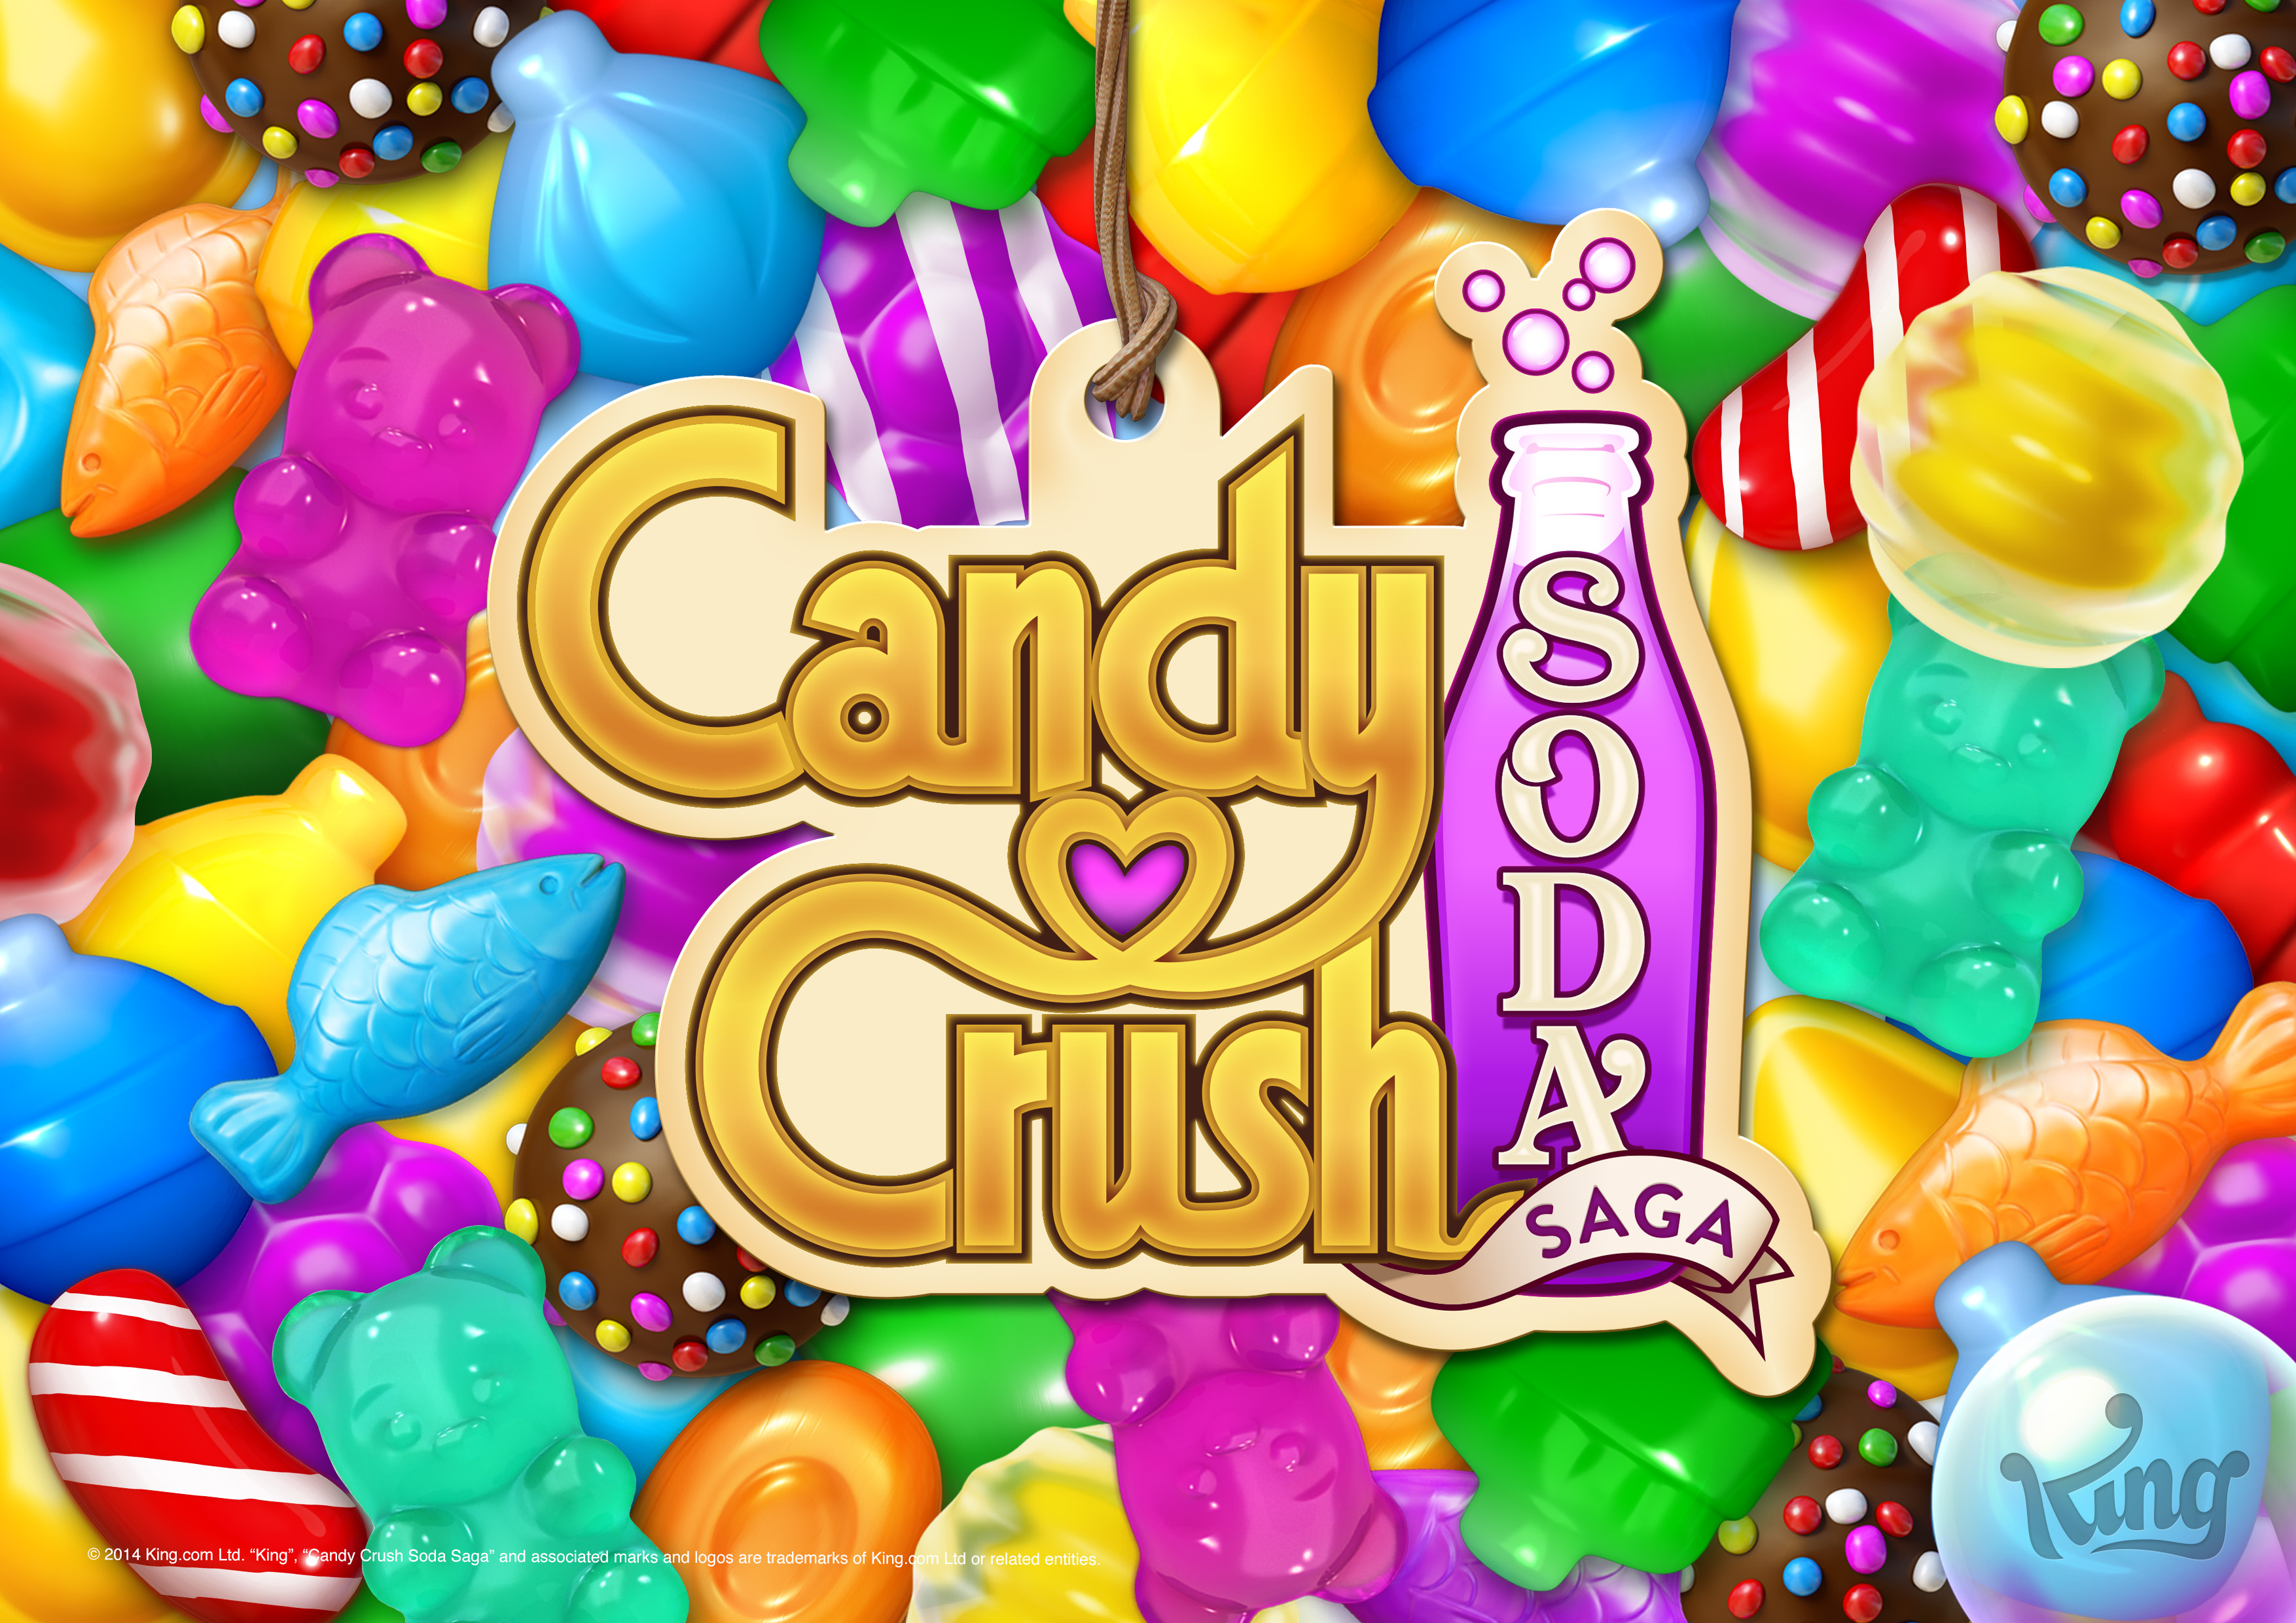 Скачать обои Candy Crush Soda Saga на телефон бесплатно